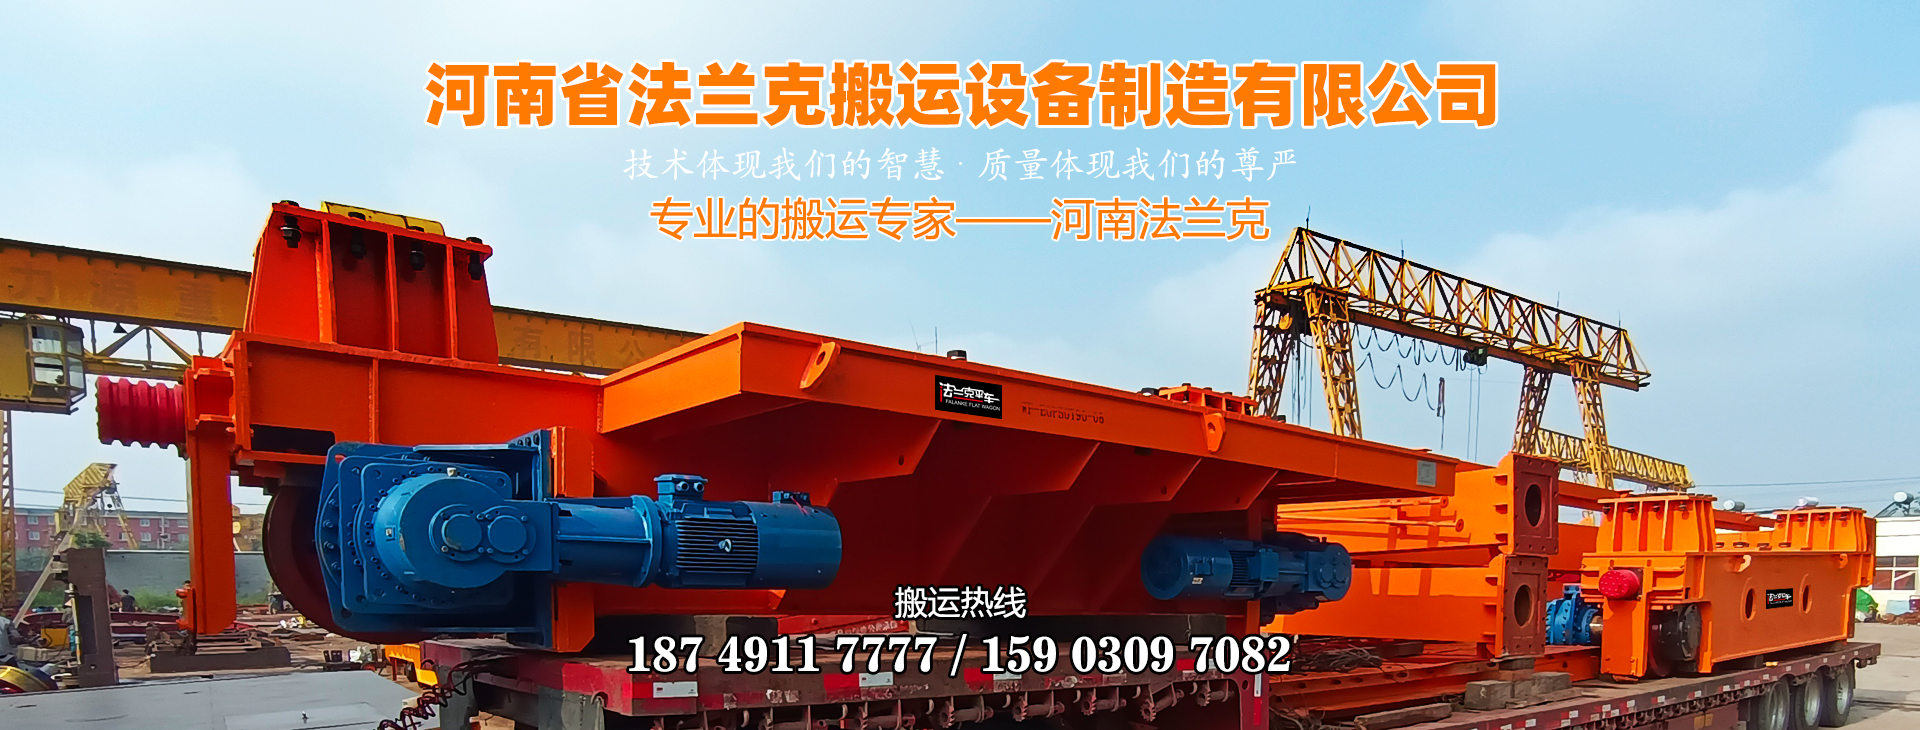 河南省法兰克搬运设备制造有限公司